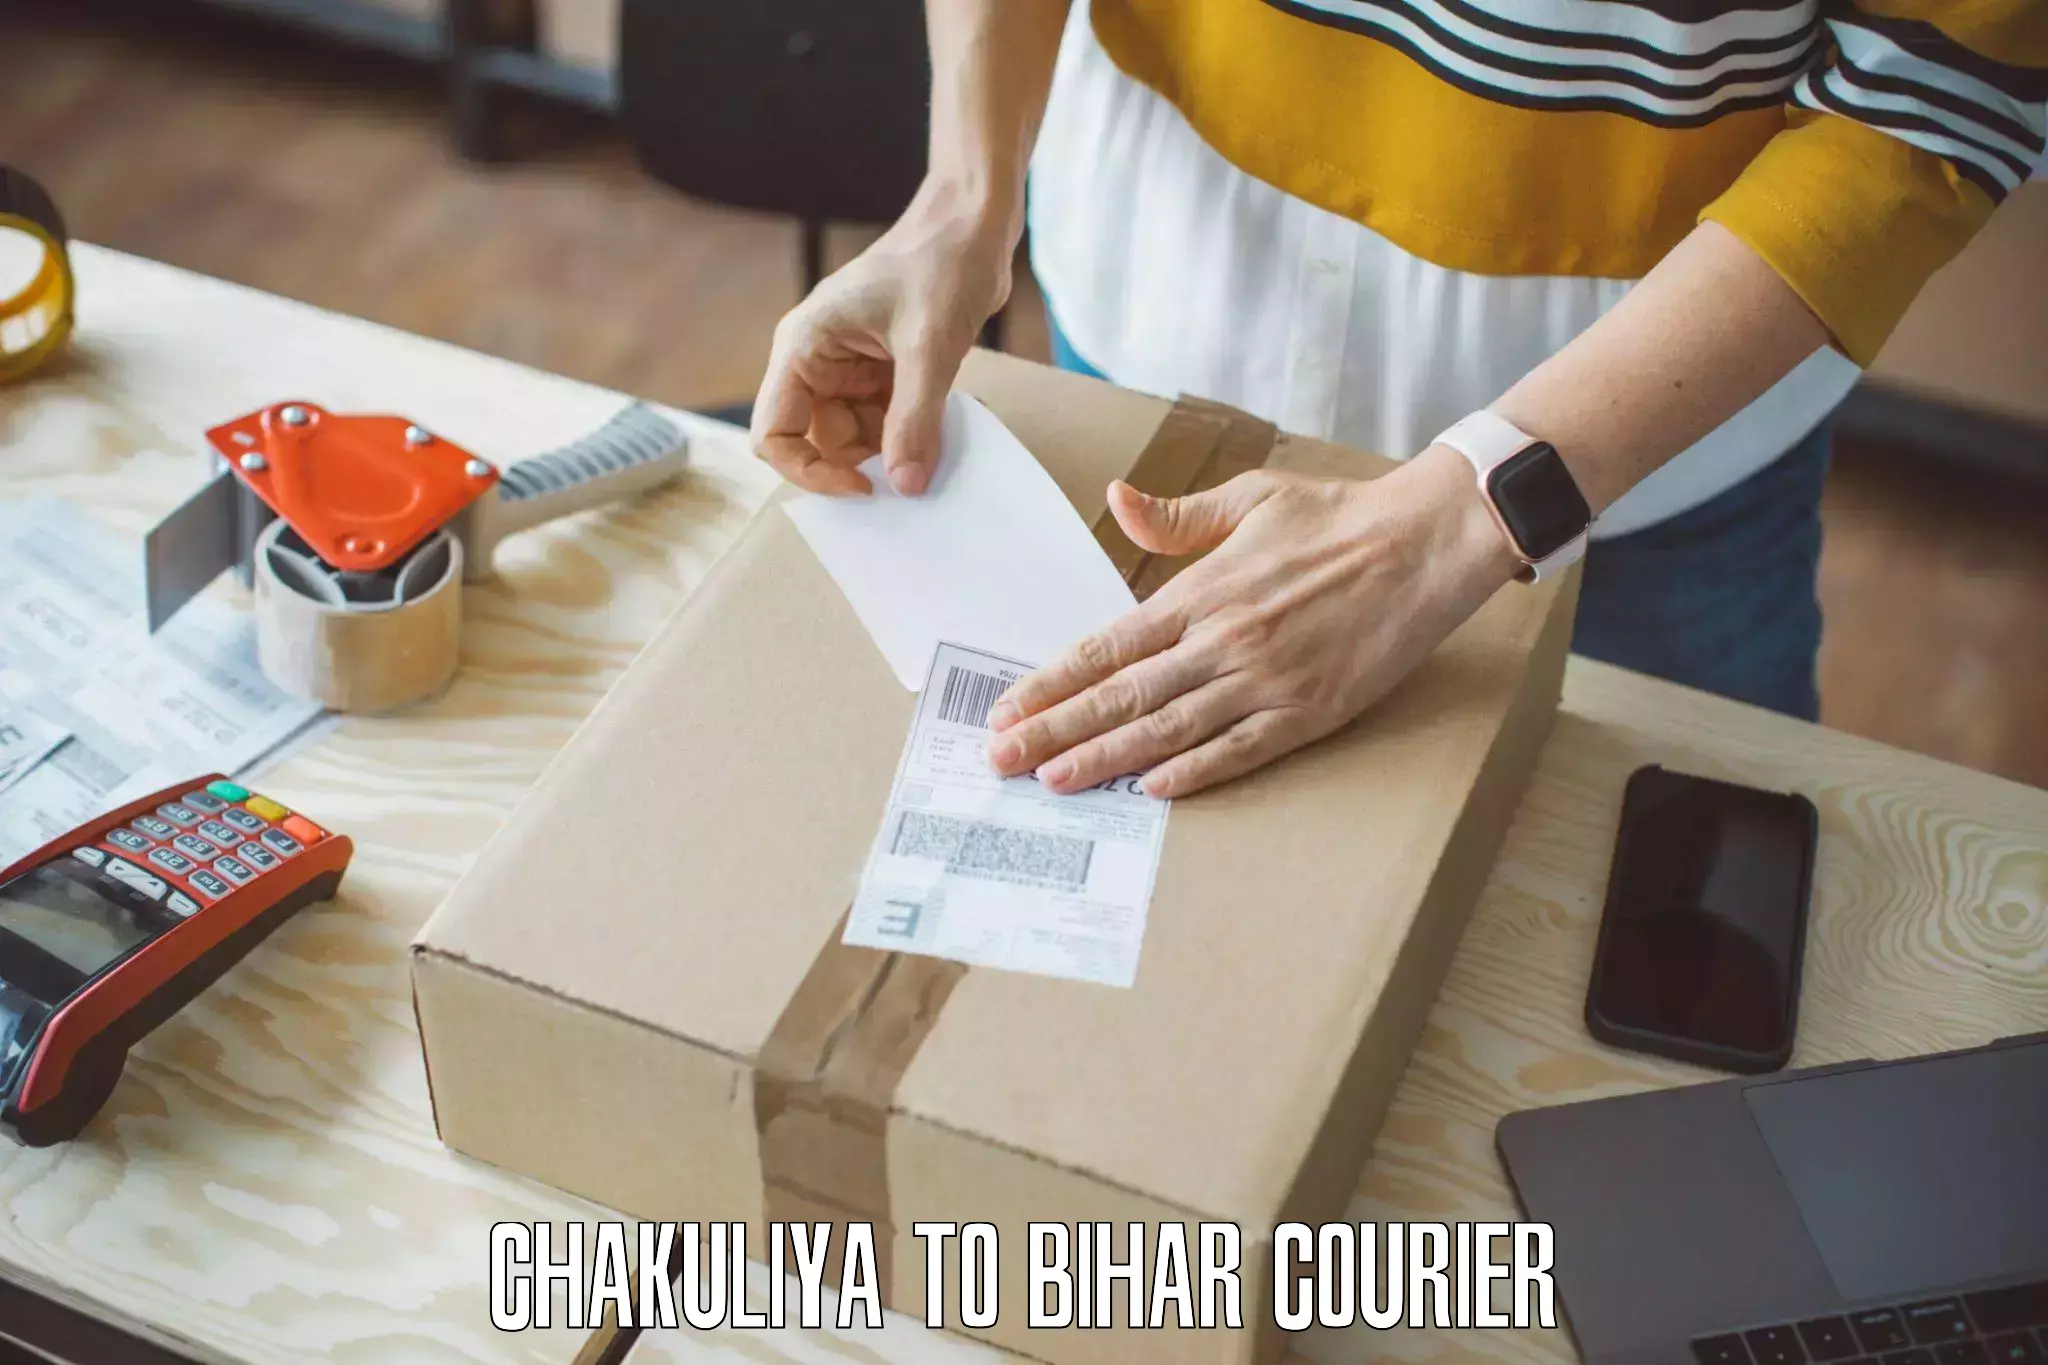 Moving and packing experts Chakuliya to Bihar